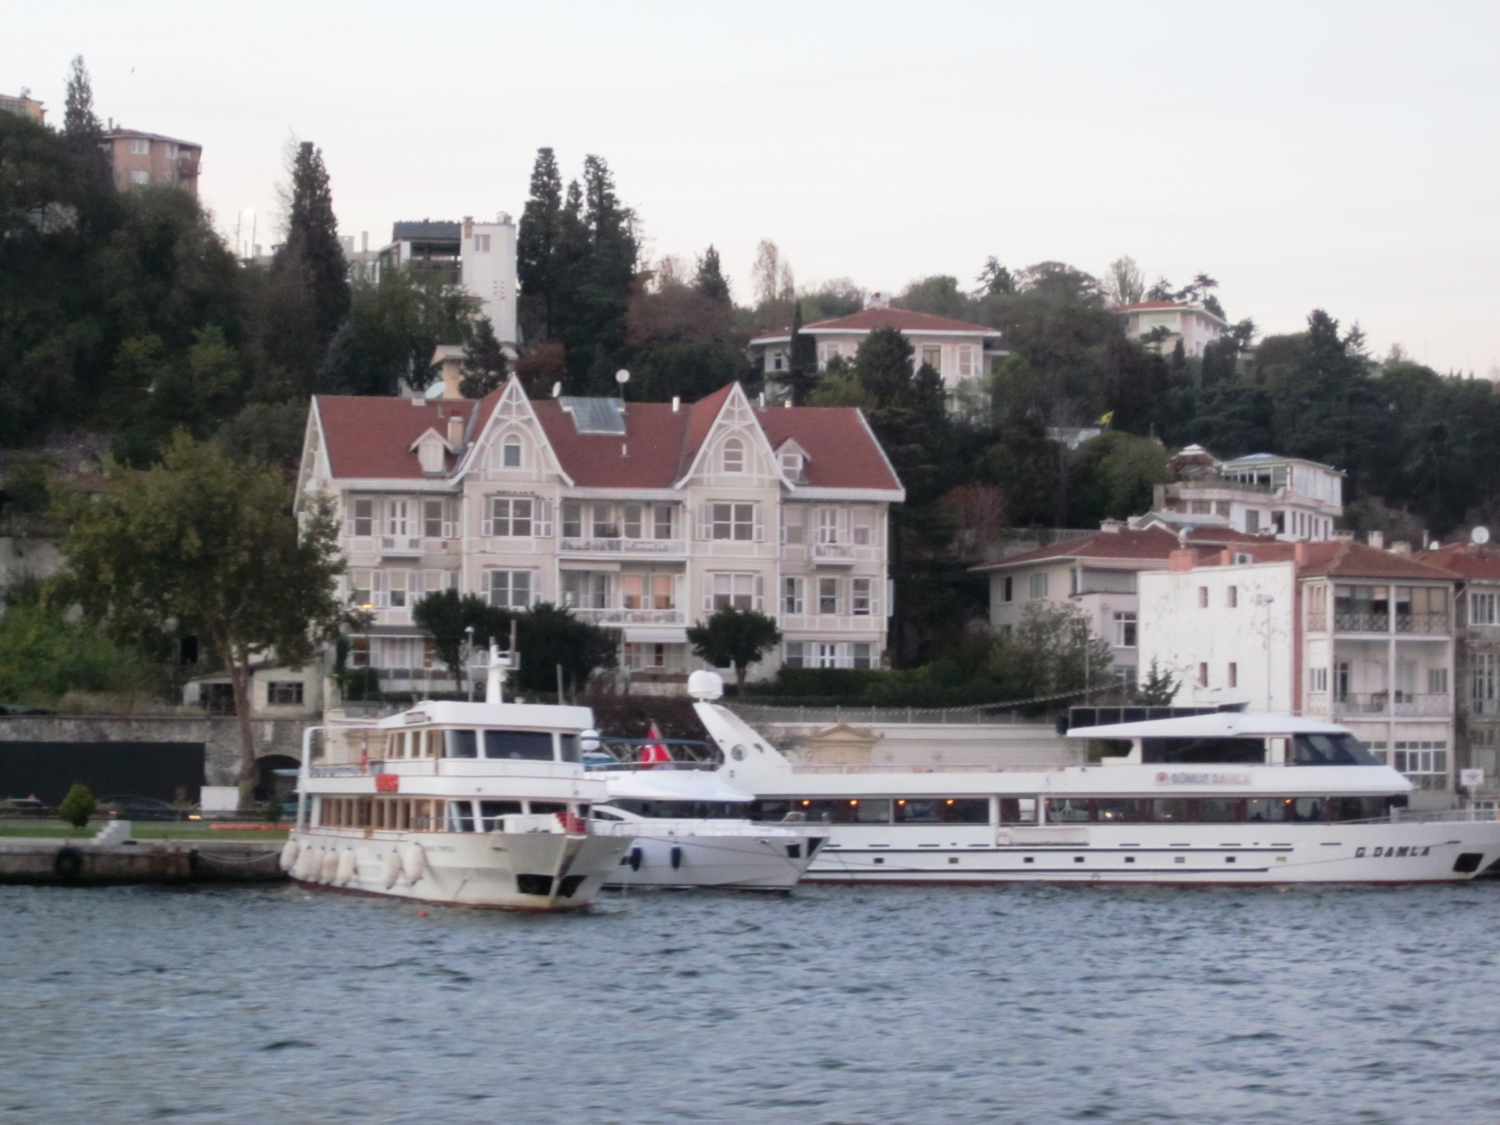 Ali Vafi Köşkü seen from the Bosporus